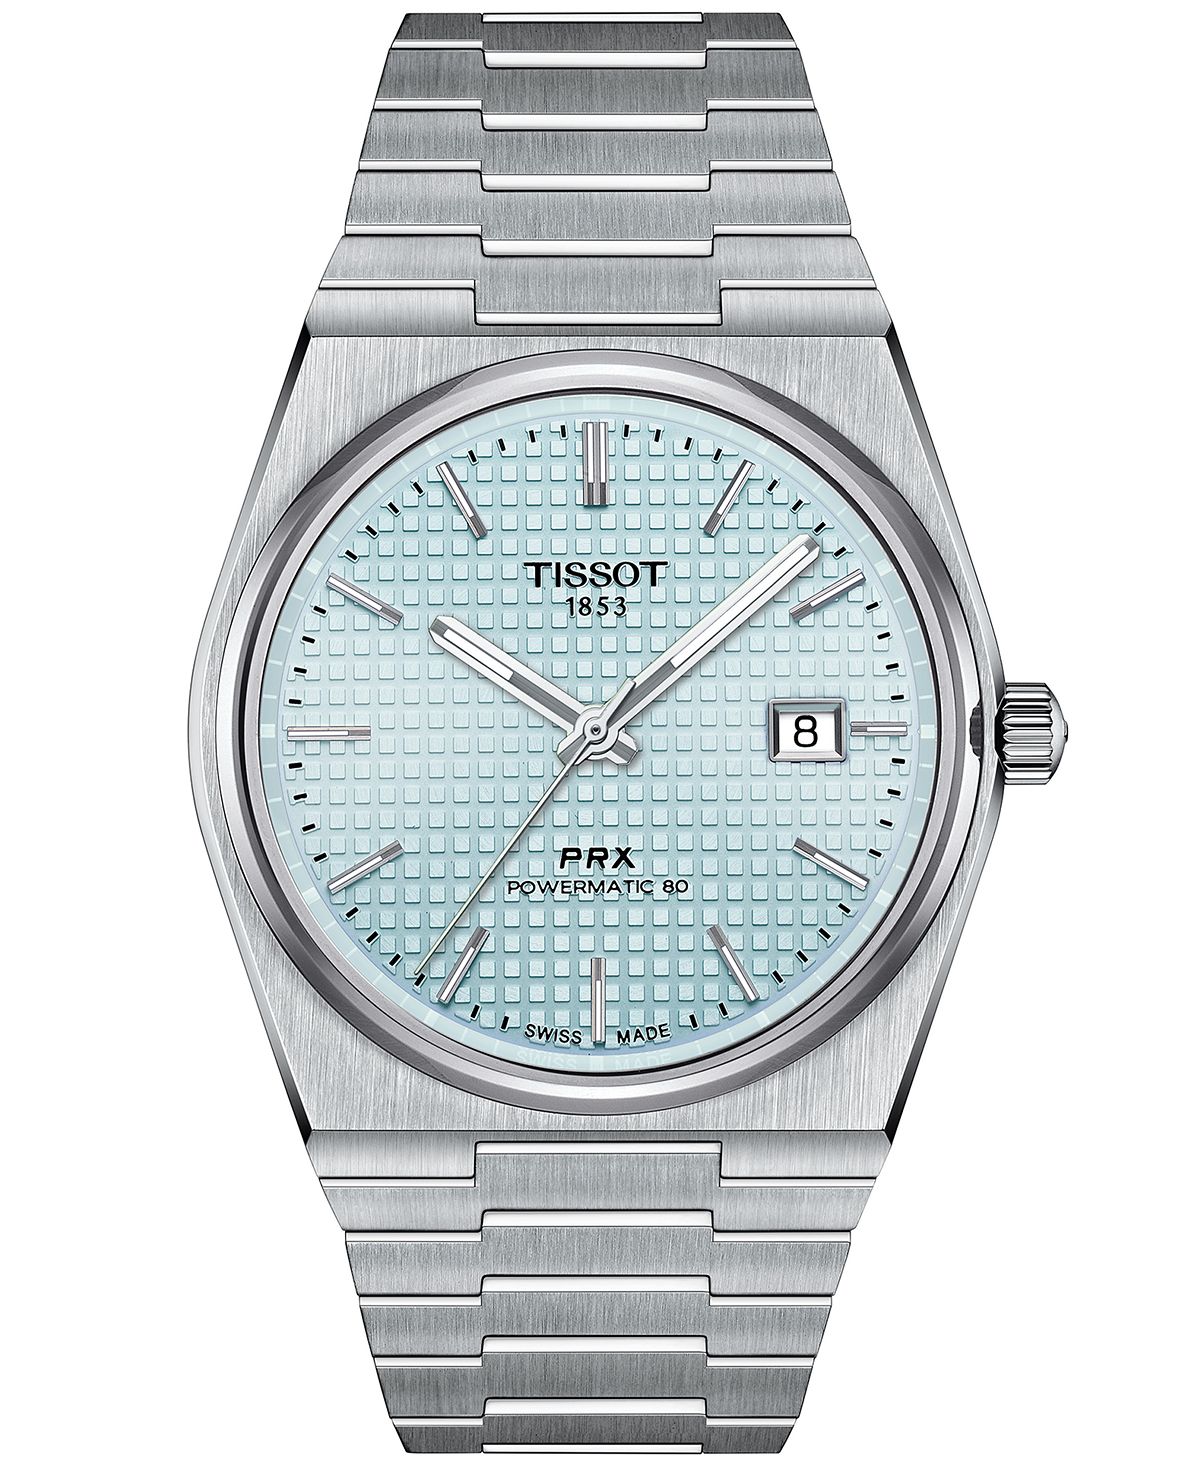 

Мужские швейцарские автоматические часы PRX с браслетом из нержавеющей стали, 40 мм Tissot